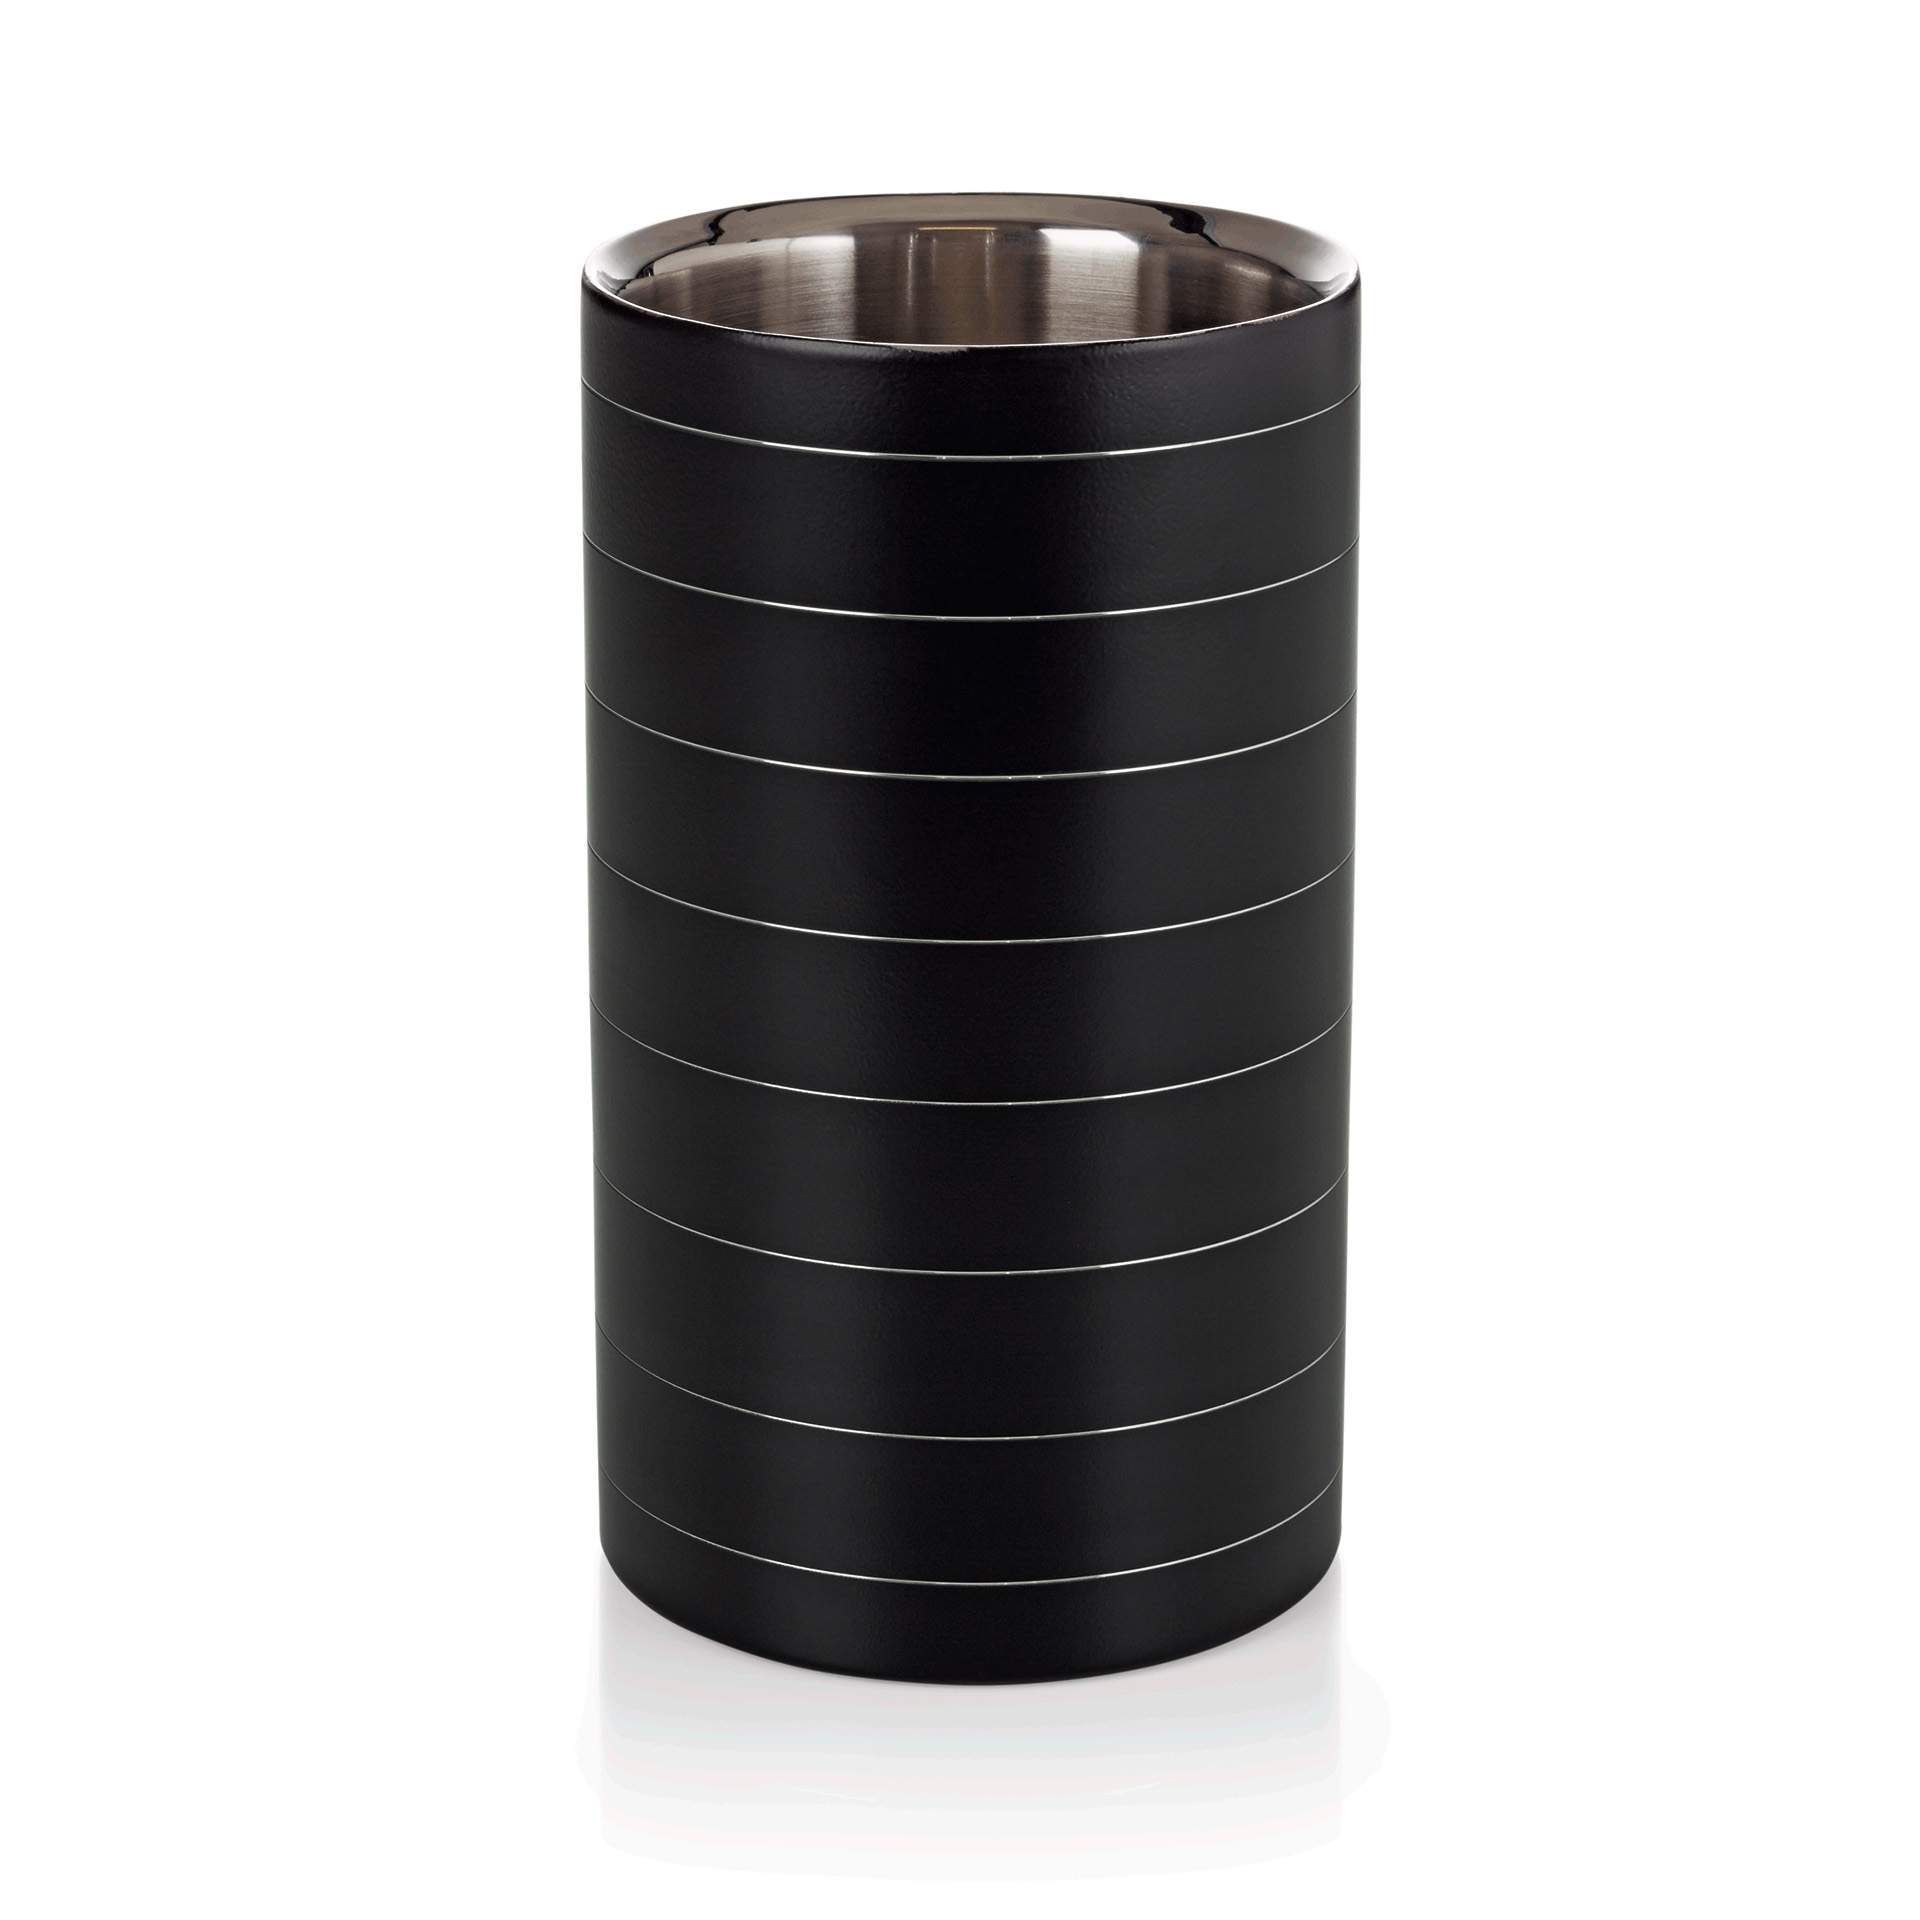 Flaschenkühler - mit schwarzer Pulverbeschichtung - Abm. 20,0 cm - Ø 11,5 cm - Edelstahl - 3600200-A